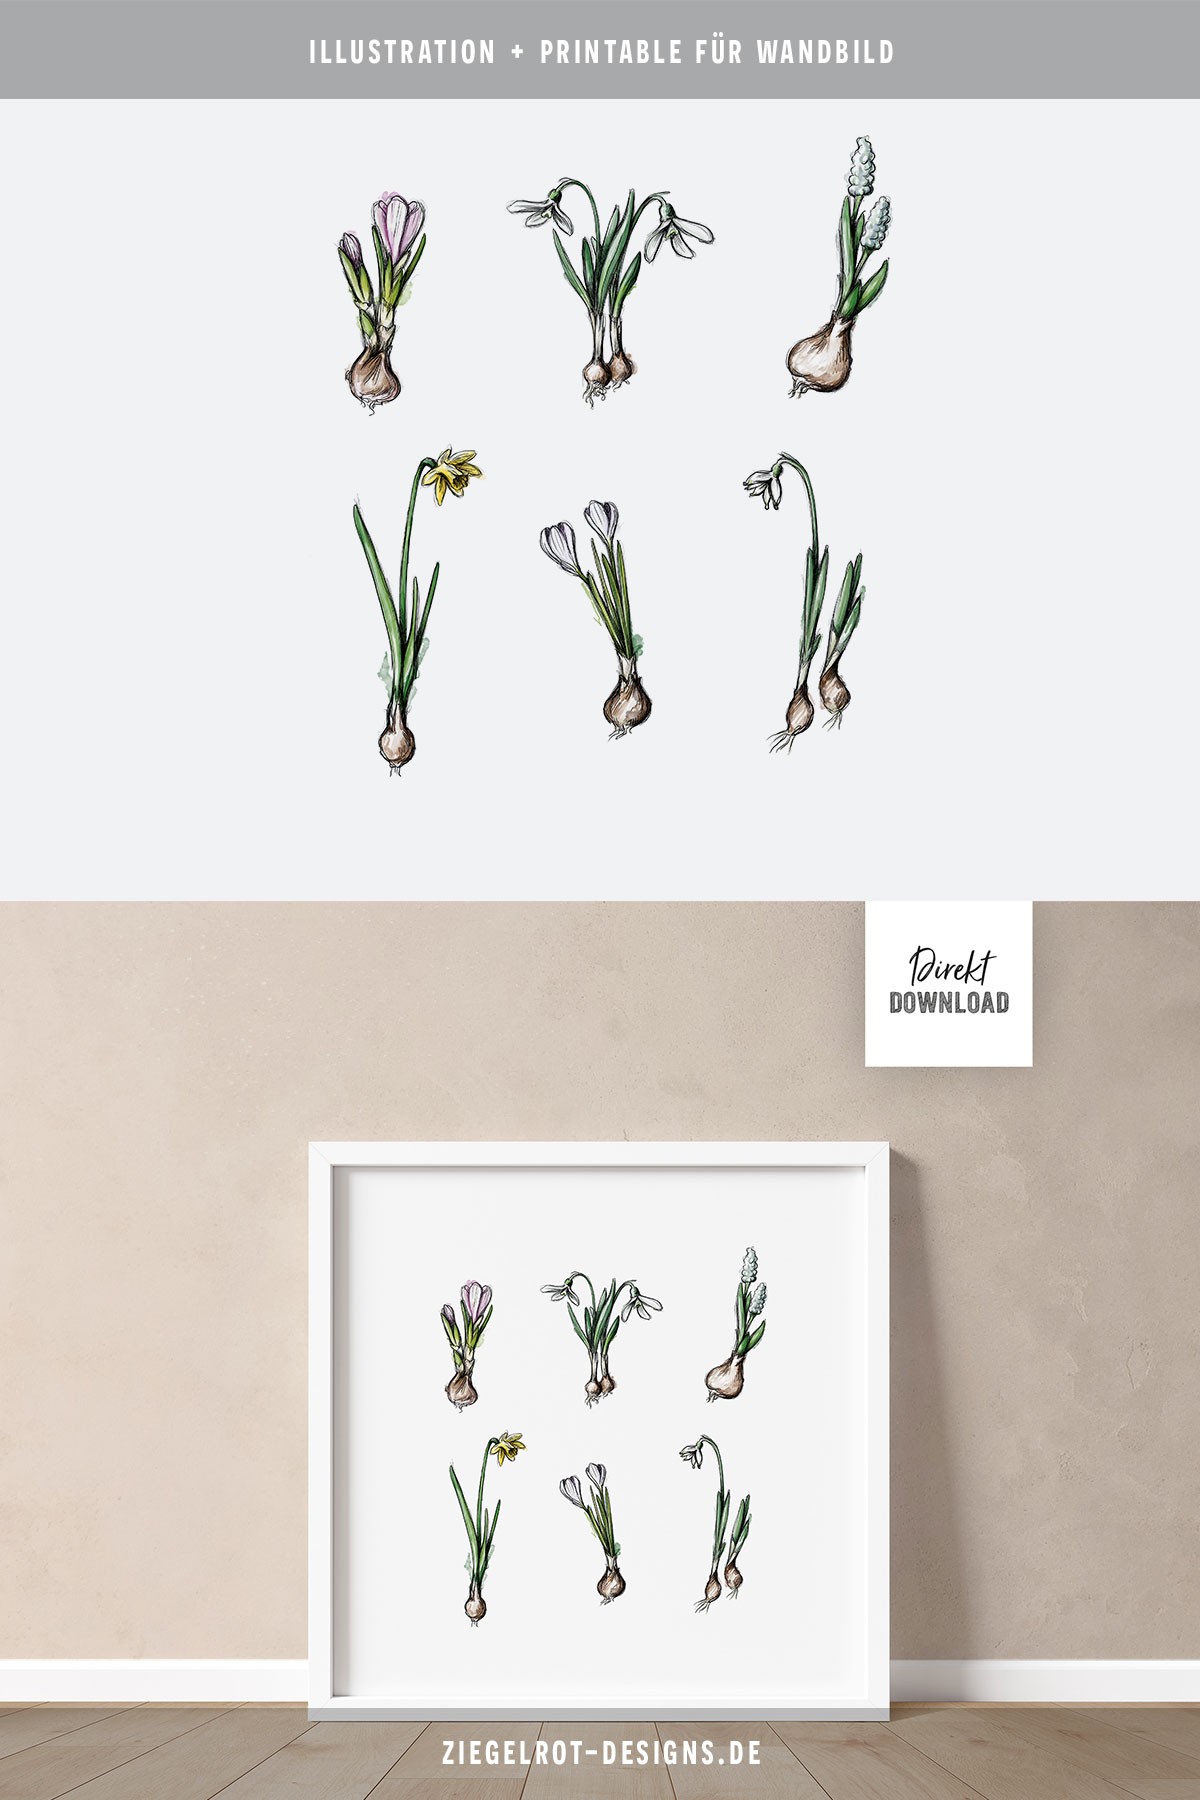 Printable für Wandbild, Illustrationsmotiv mit Frühlingsblühern, Blumenzwiebeln